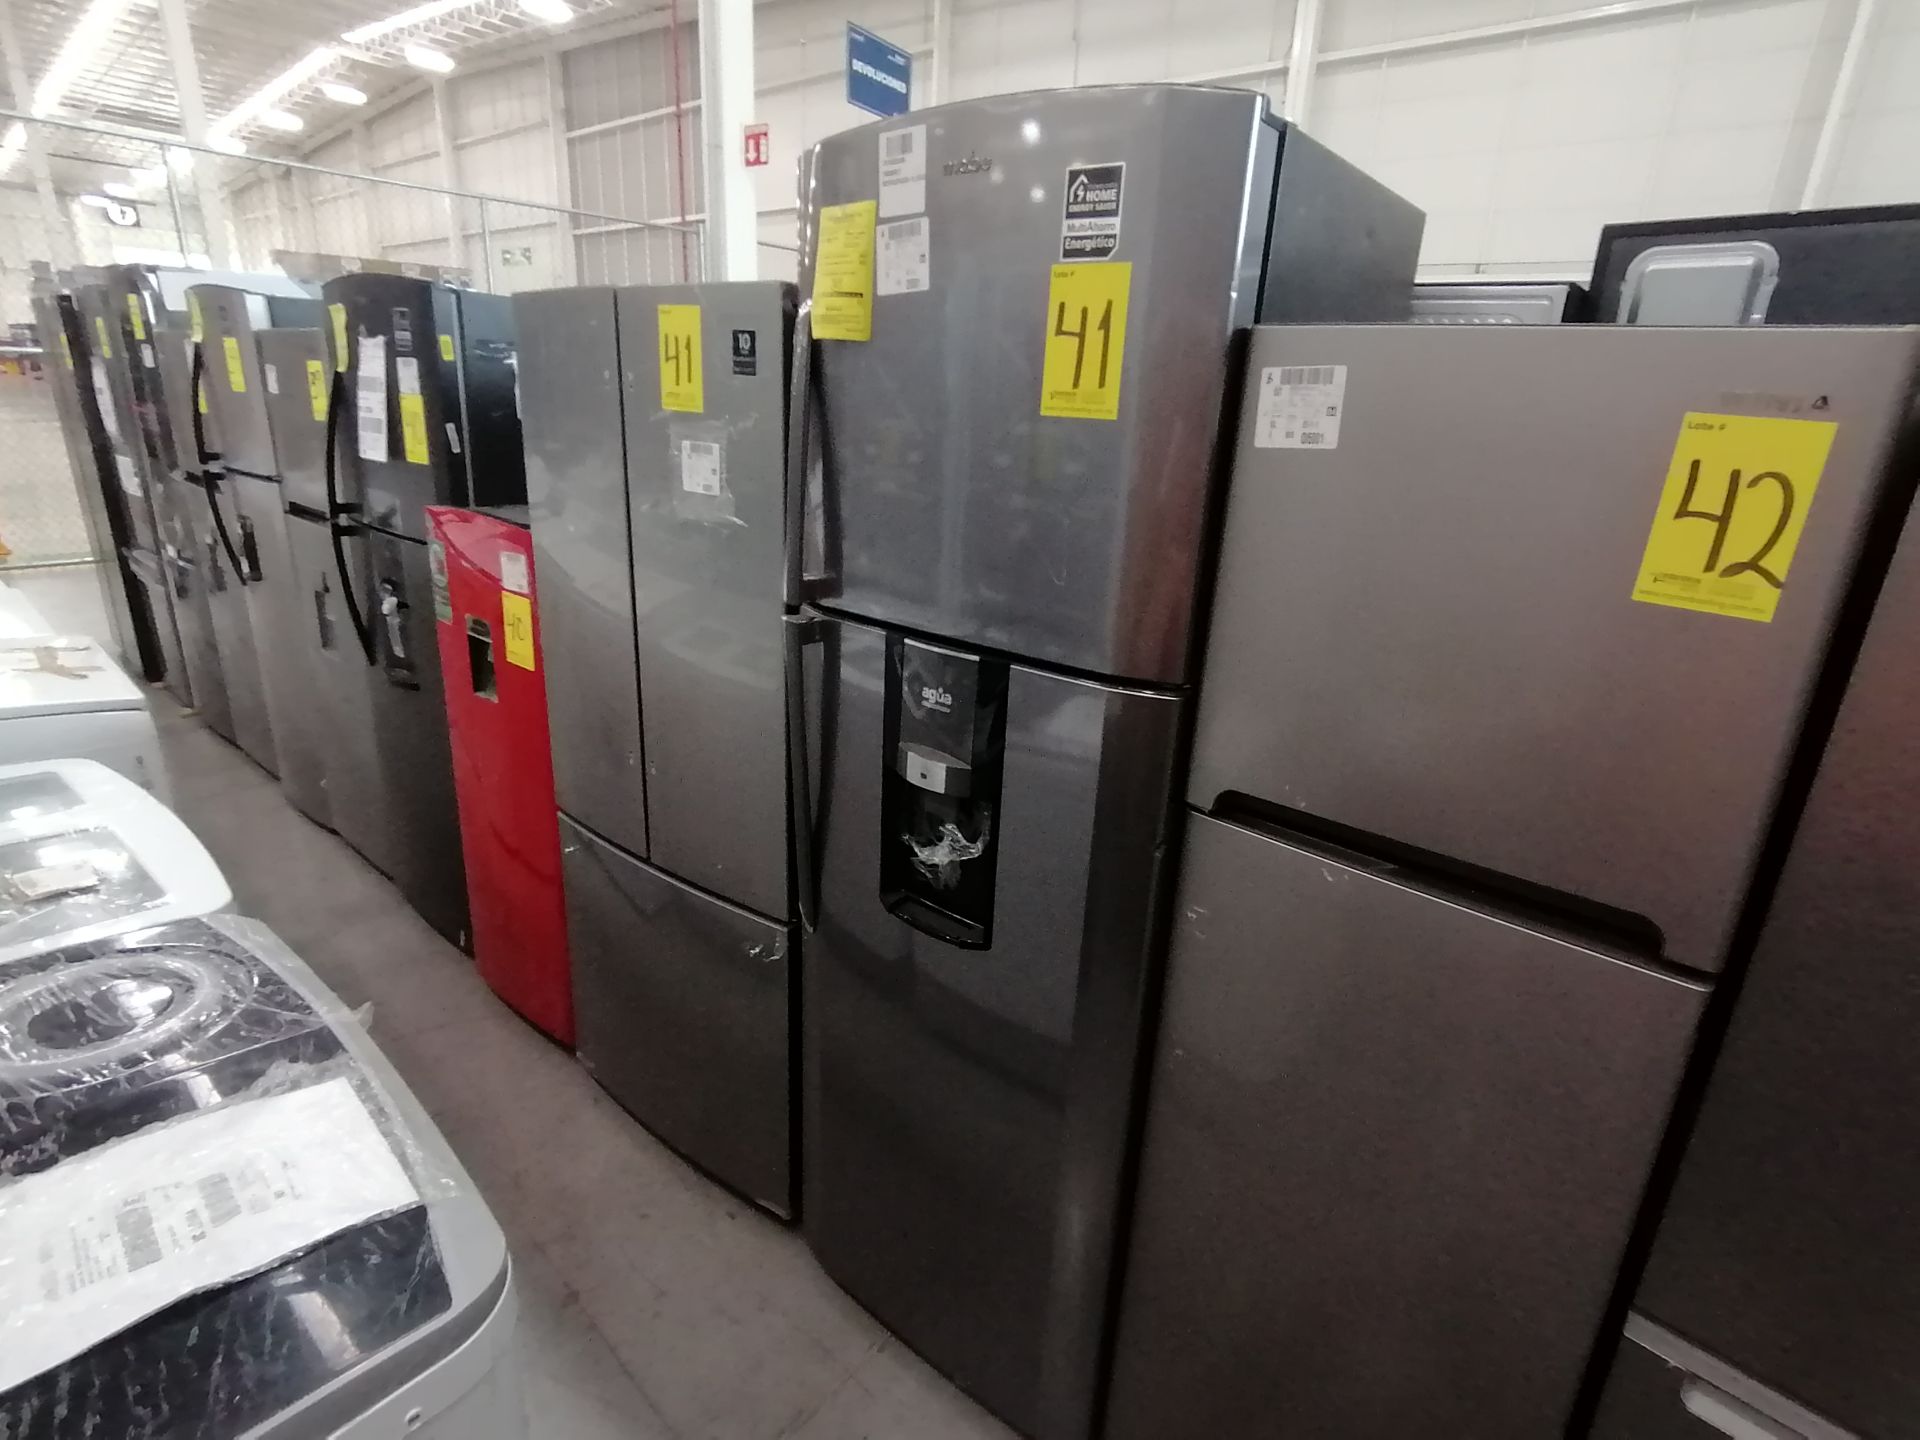 1 Refrigerador Marca Samsung, Modelo rf220fctas8, Serie BBR100057N, Color Gris, Golpeado, Favor de